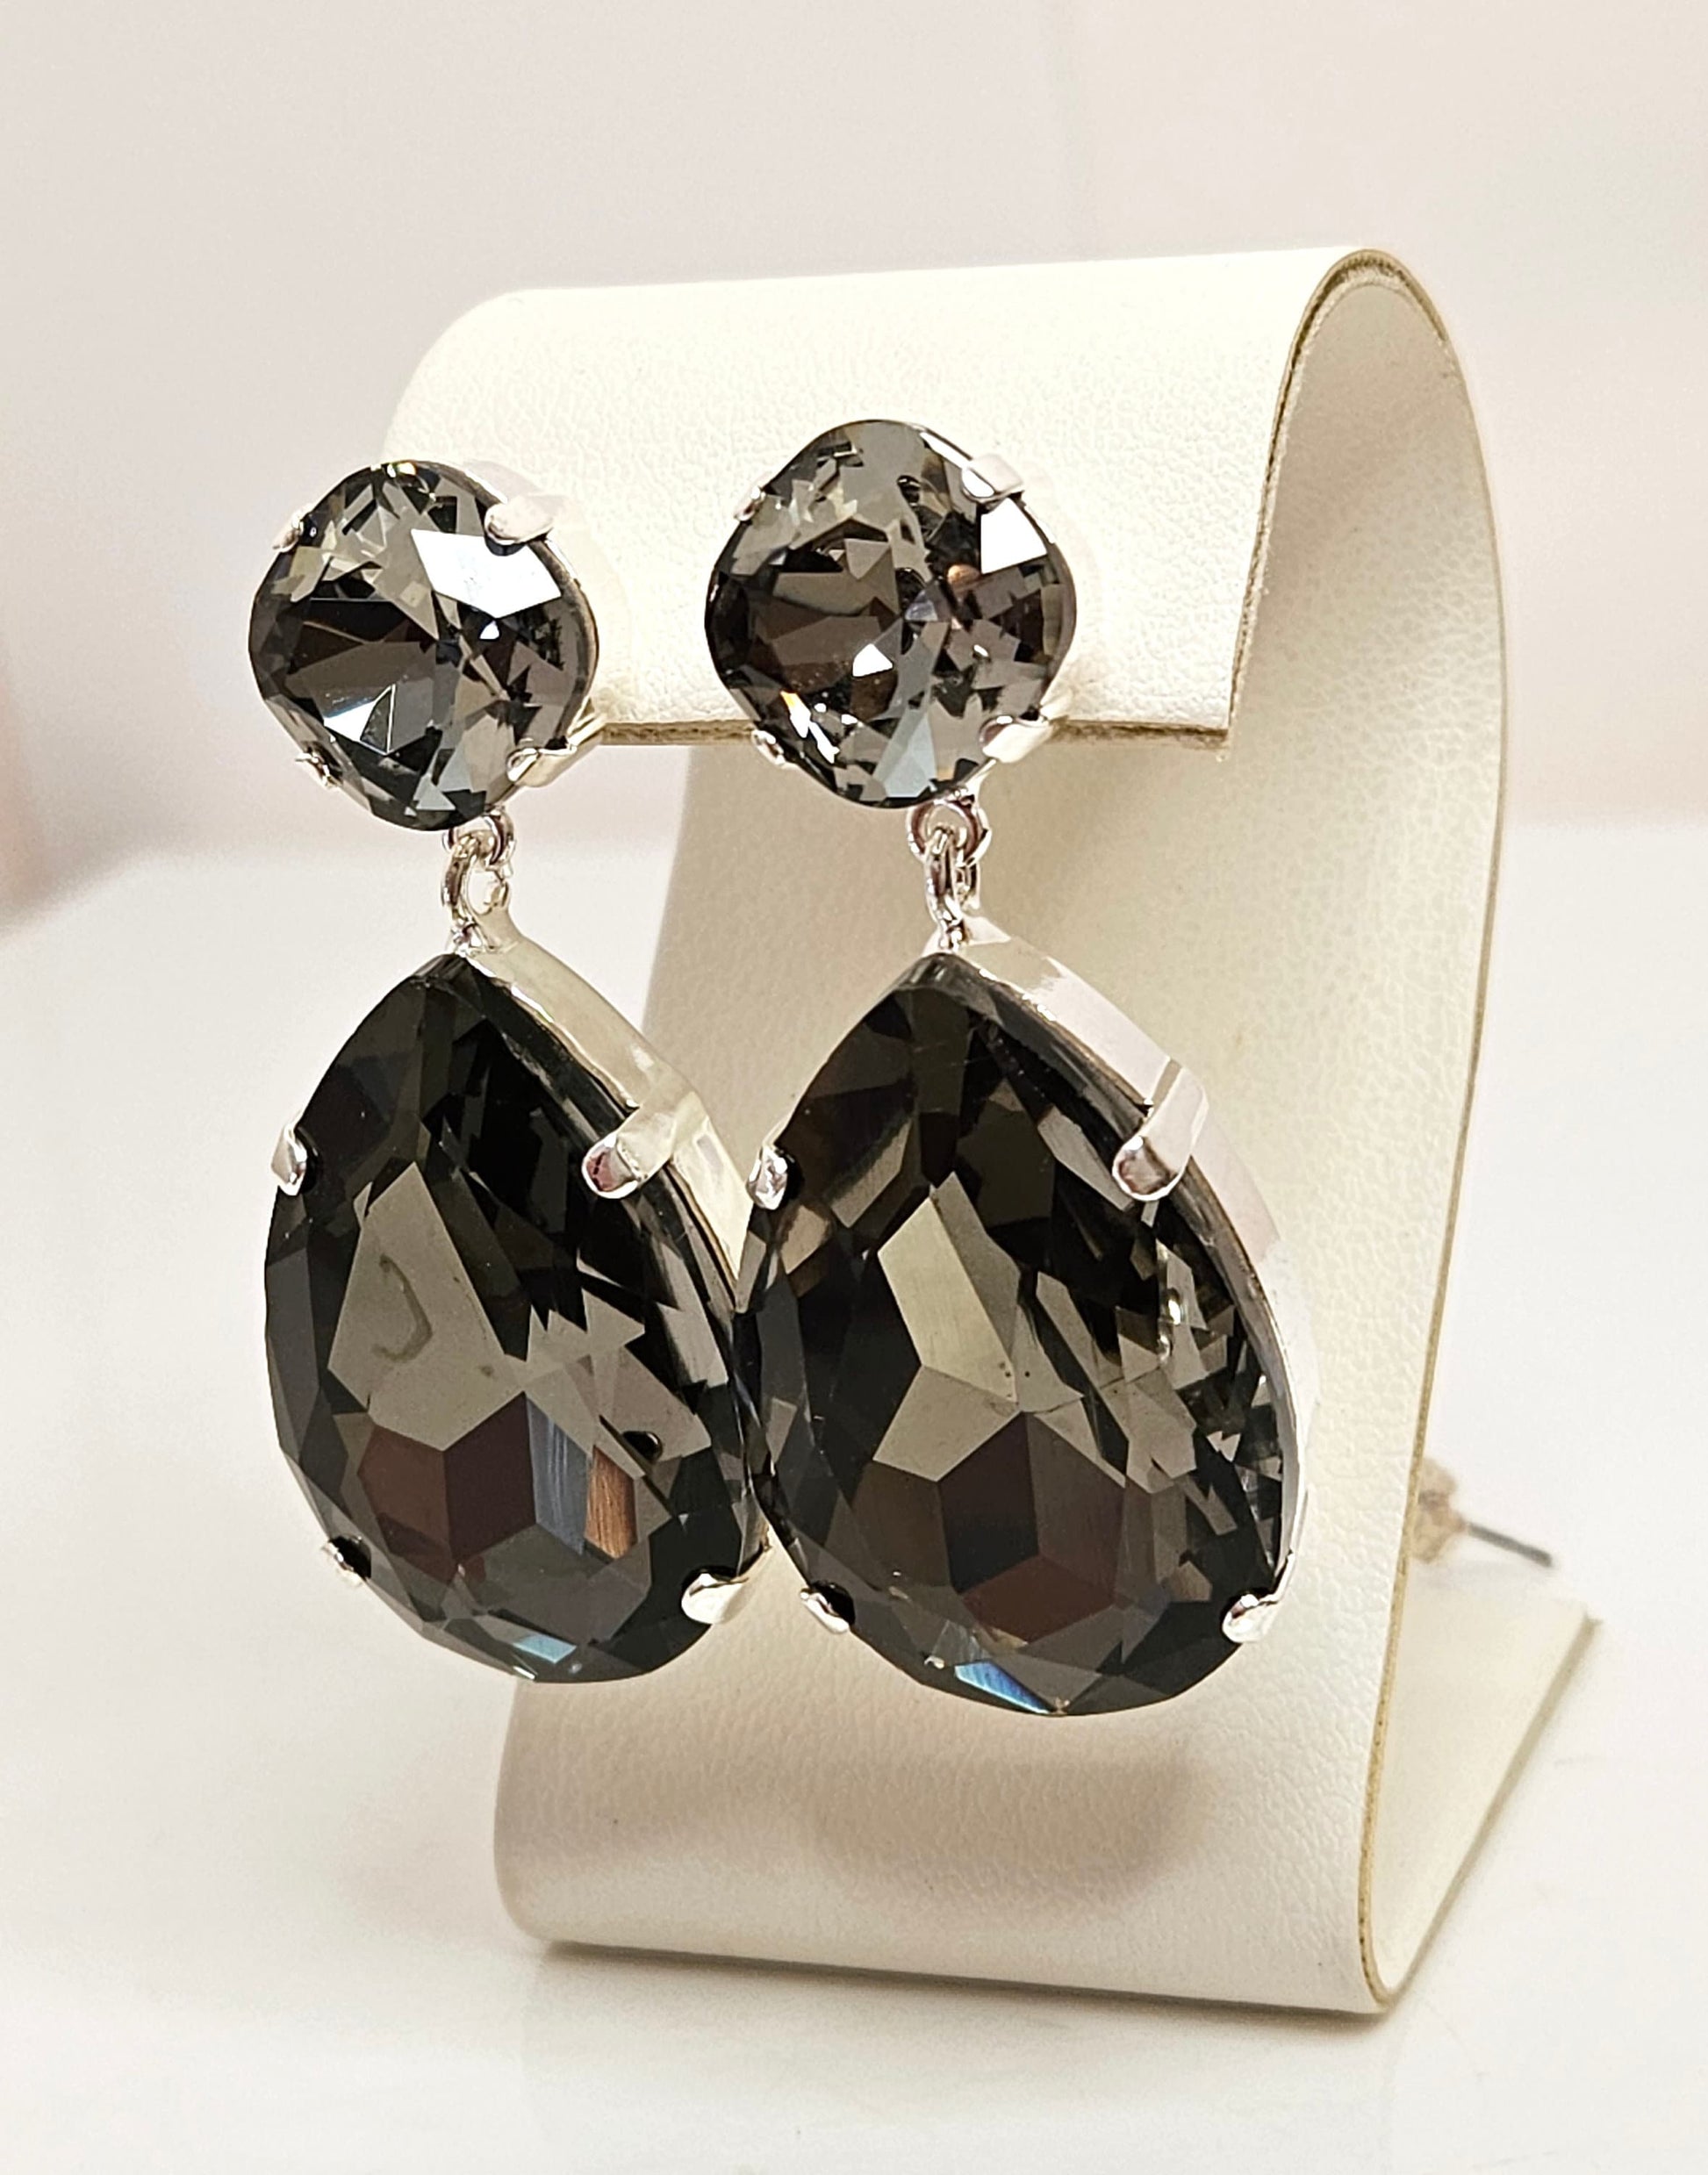 Dark Grey Peardrop Crystal Earrings, Vintage Style, Black Statement Drops, Gothic Wedding Earrings, Stylish Dangles, Earrings For Women